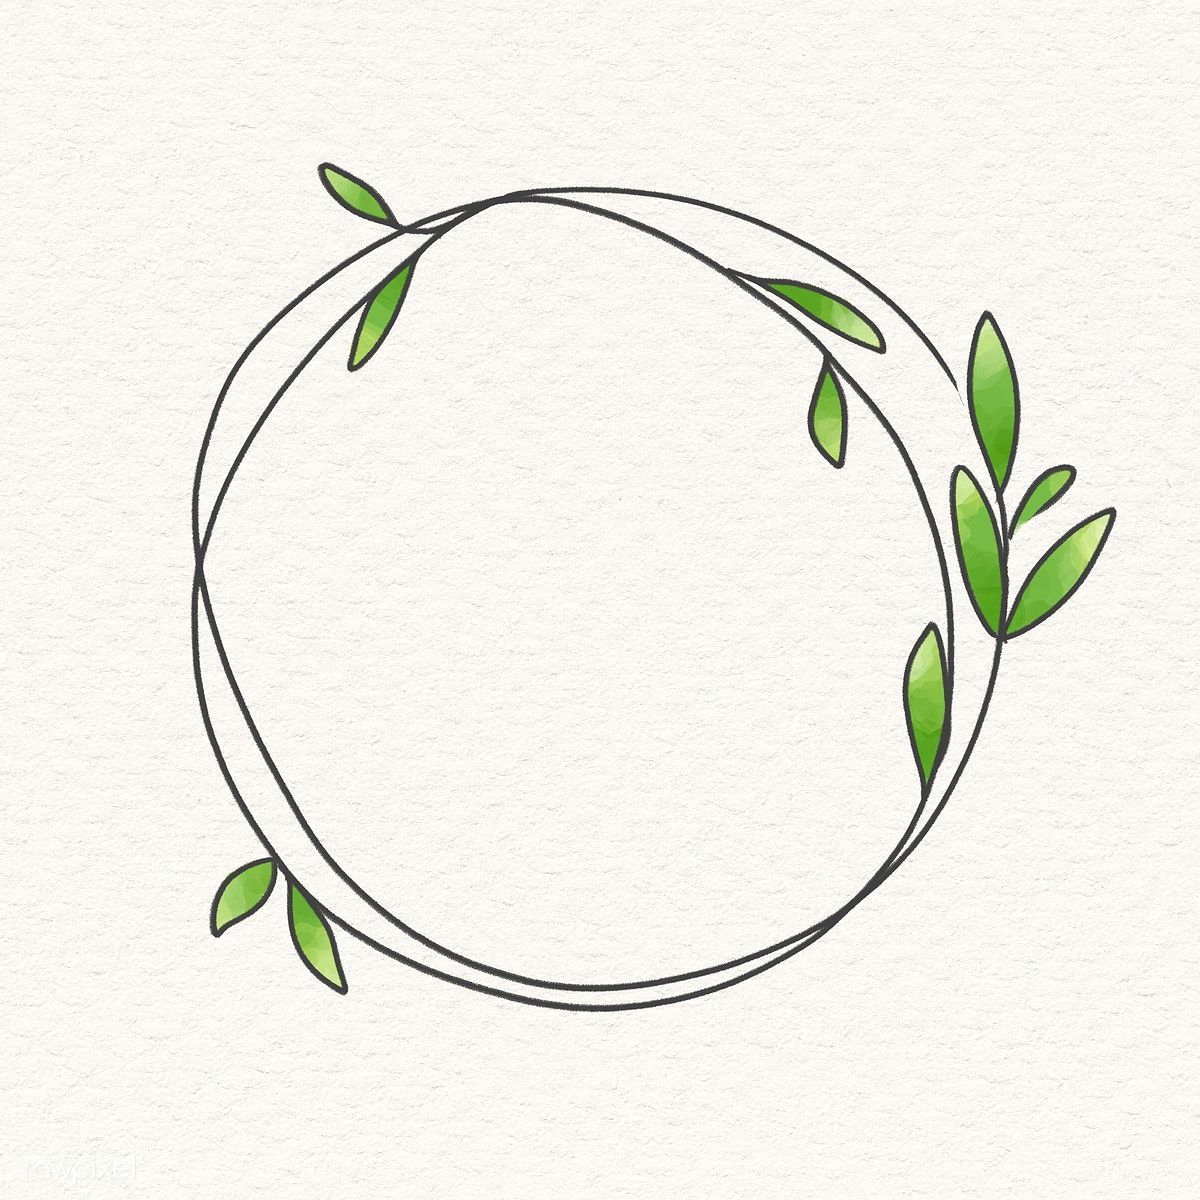 Download premium illustration of Doodle wreath frame on beige background -   beauty Background illustration